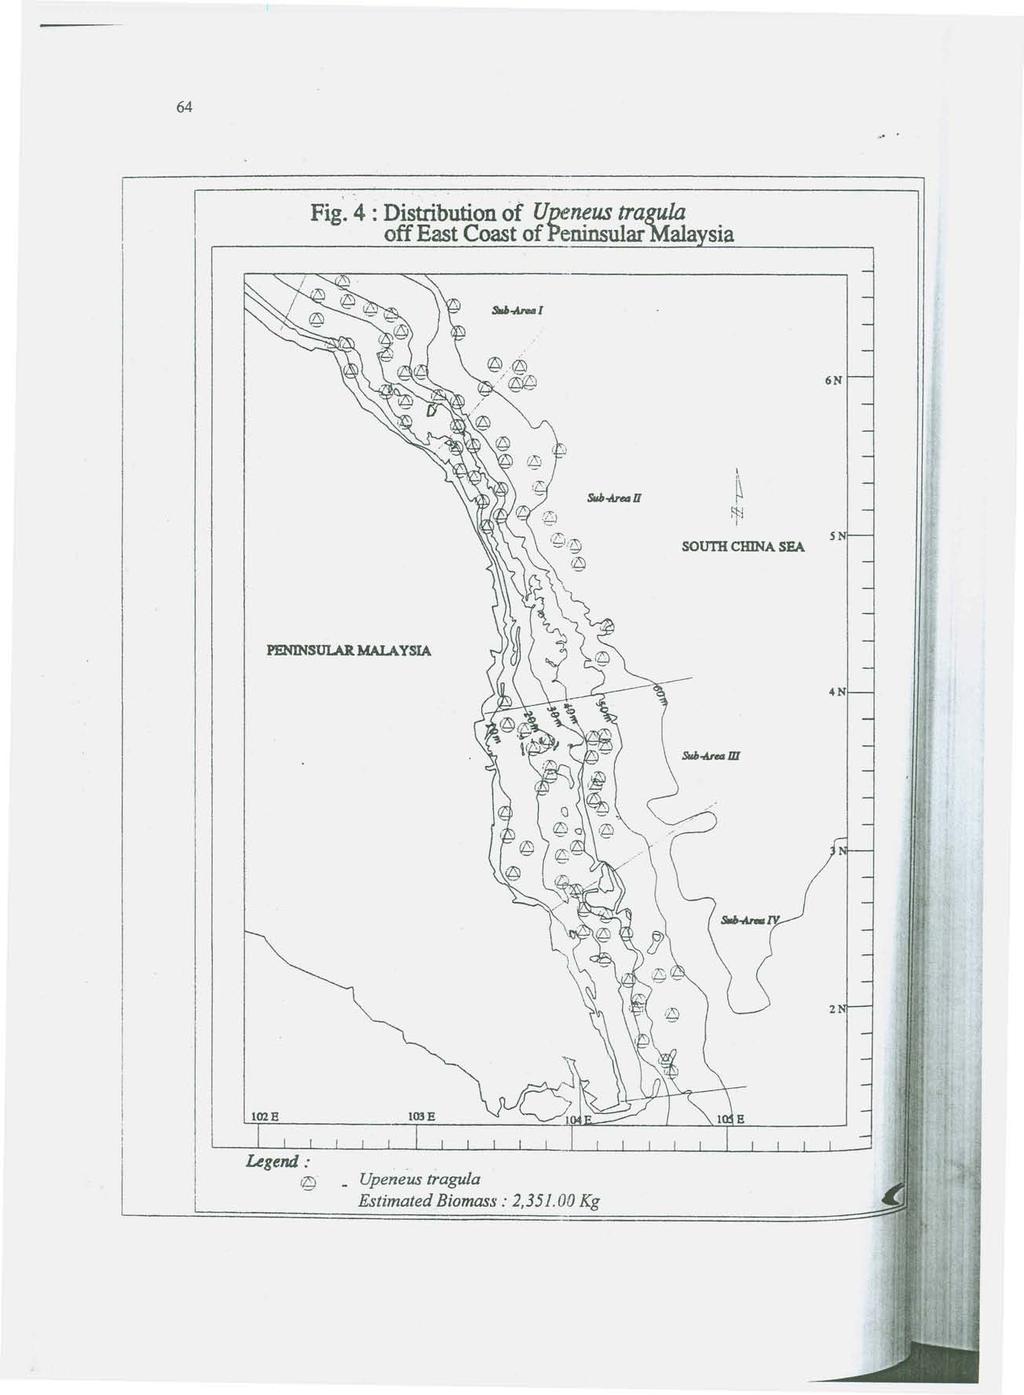 Fig. 4 : Distribution of Upeneus tragula off East Coast of Peninsular